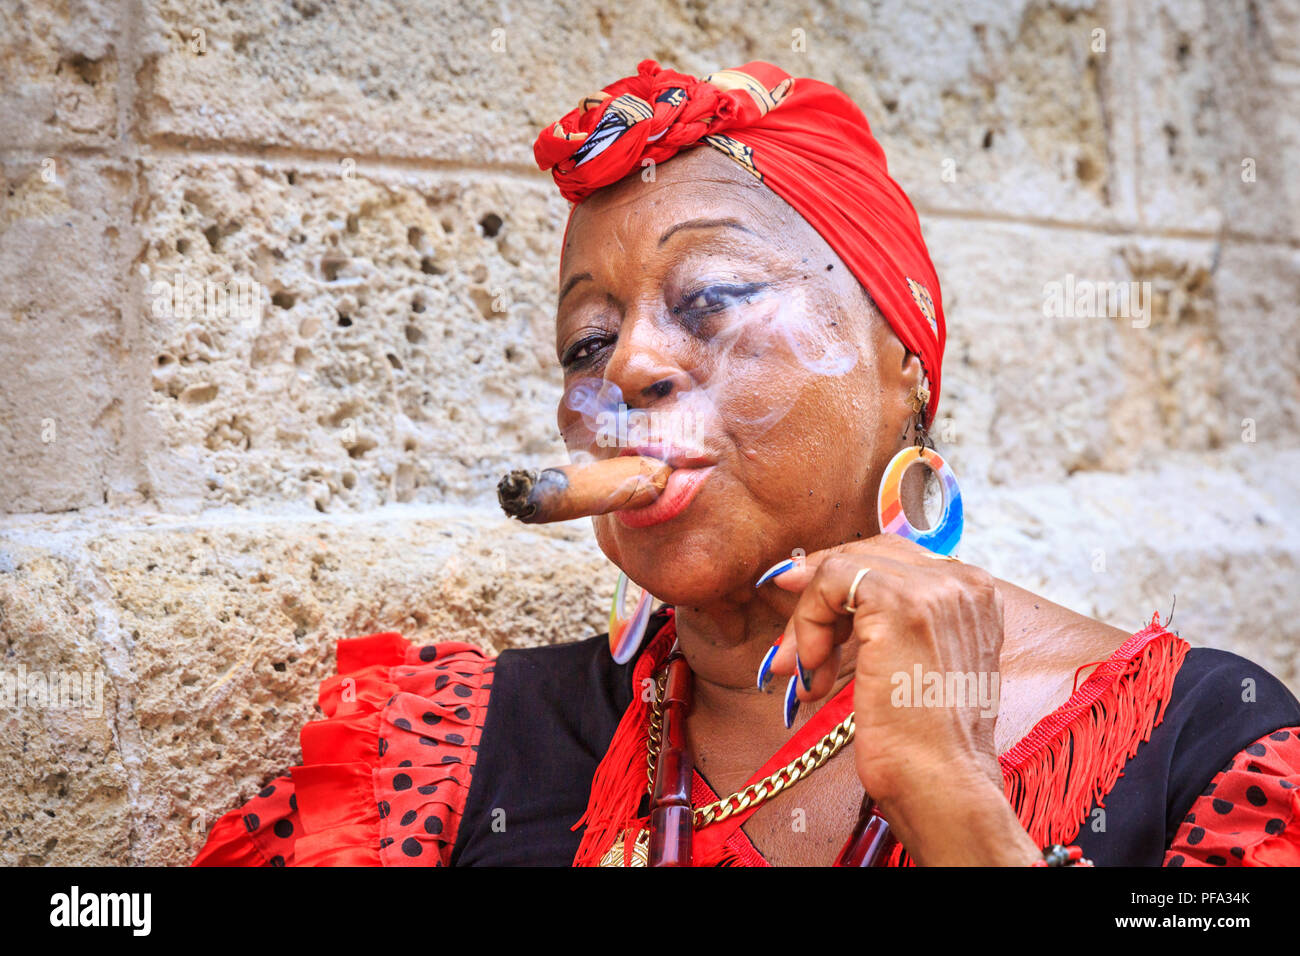 Kubanische Frau rauchen Zigarre in farbenfrohen traditionellen Outfit, Portrait von lokalen Frauen in Havanna, Kuba posing Stockfoto